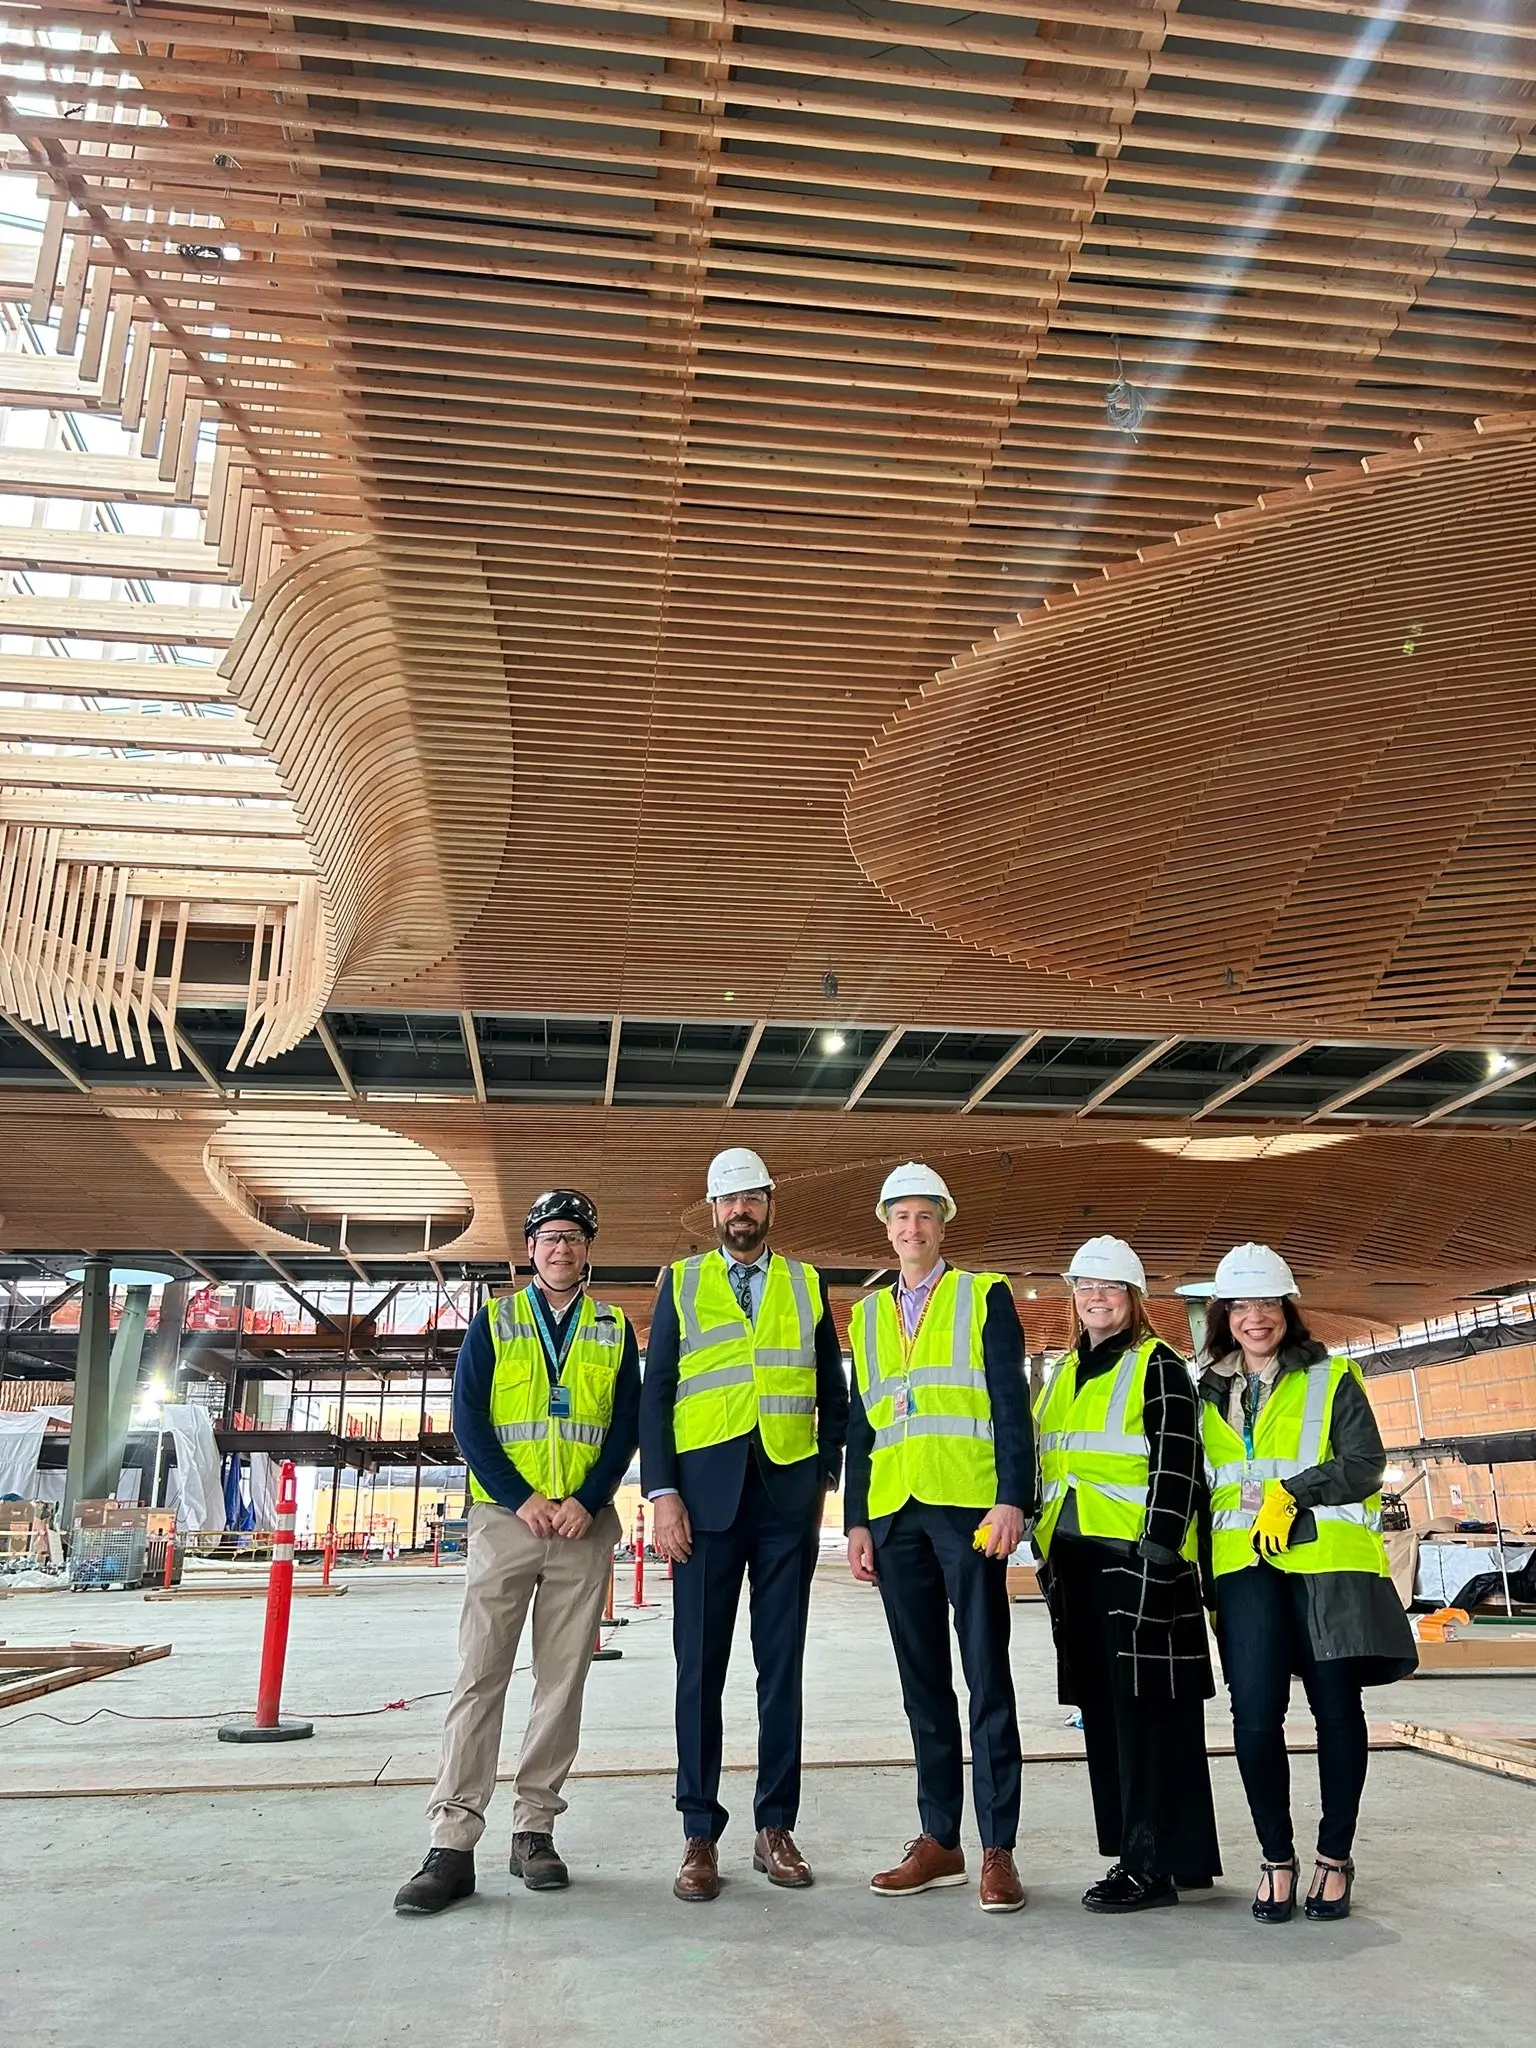 Le ministre Jagrup Brar est photographié avec plusieurs collègues dans une nouvelle section de l’aéroport de Portland, en Oregon, qui présente une construction en bois massif